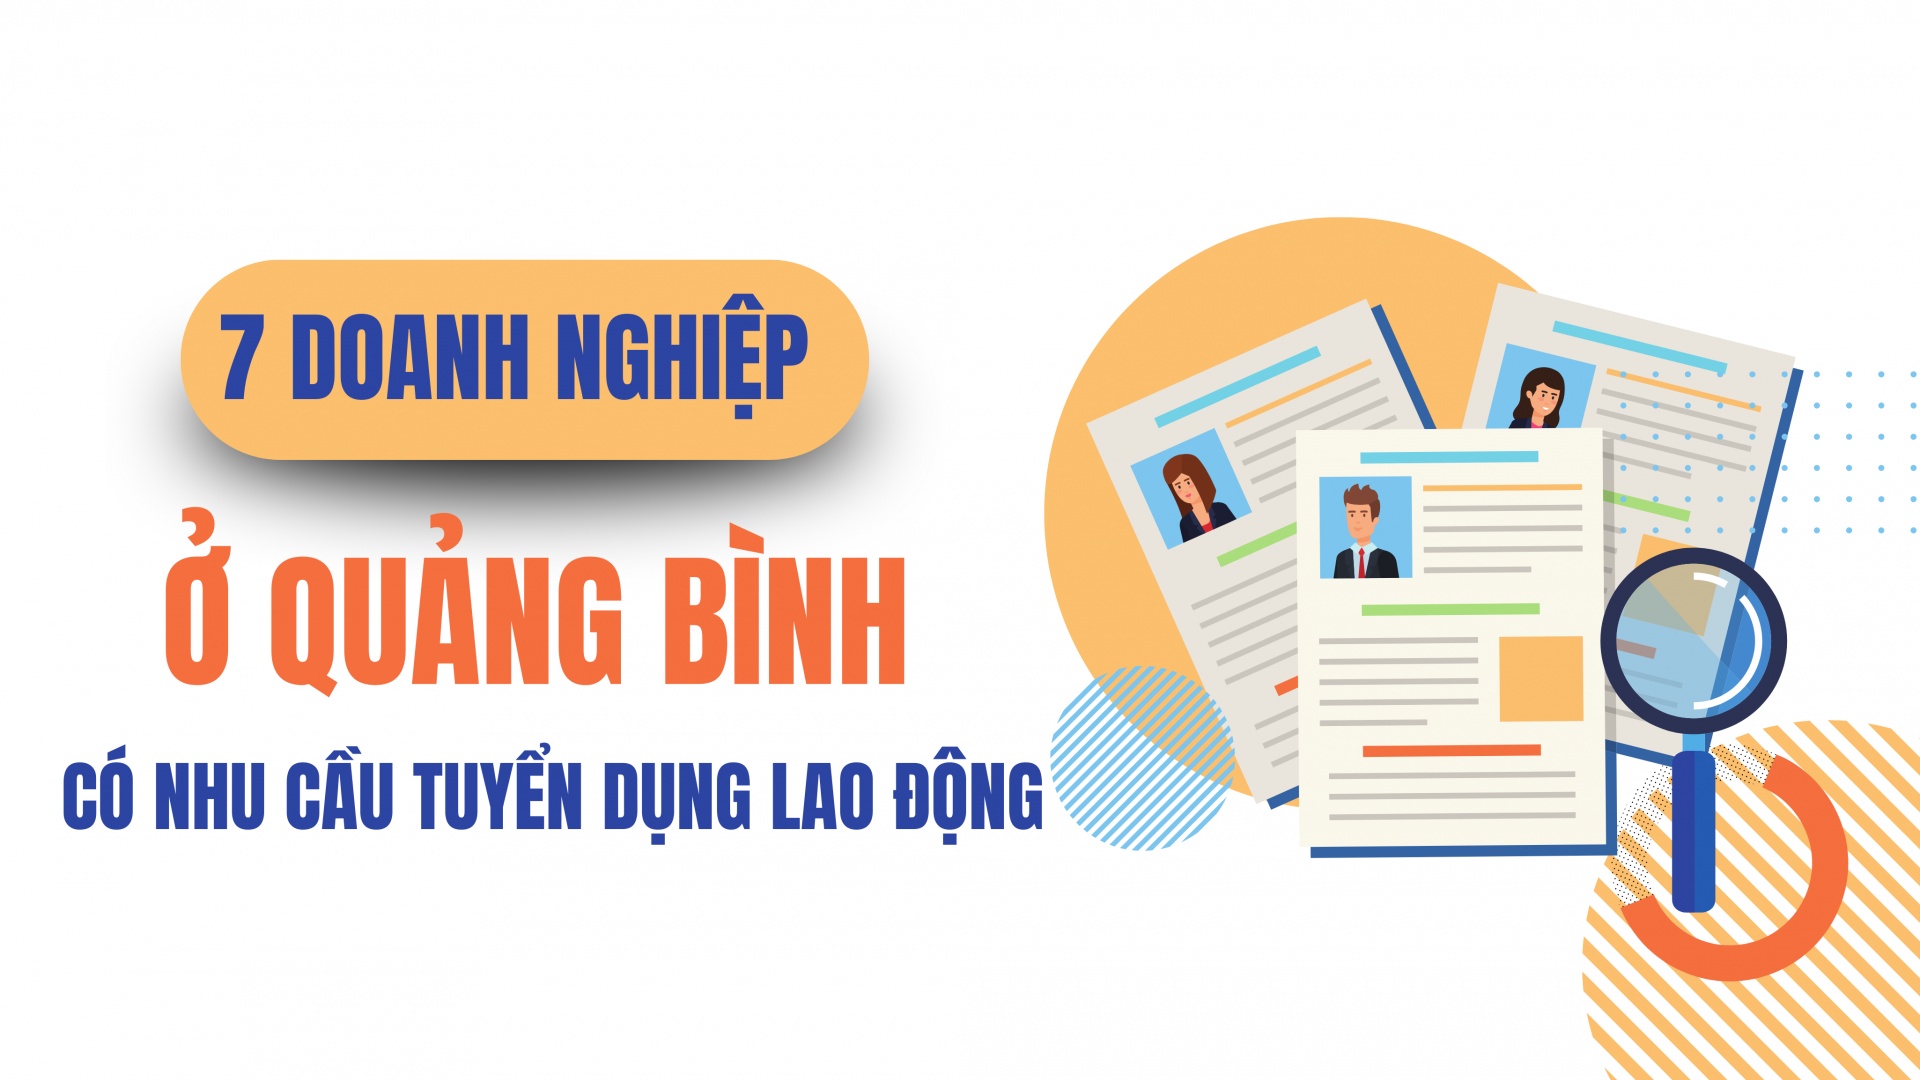 7 doanh nghiệp ở Quảng Bình có nhu cầu tuyển dụng lao động